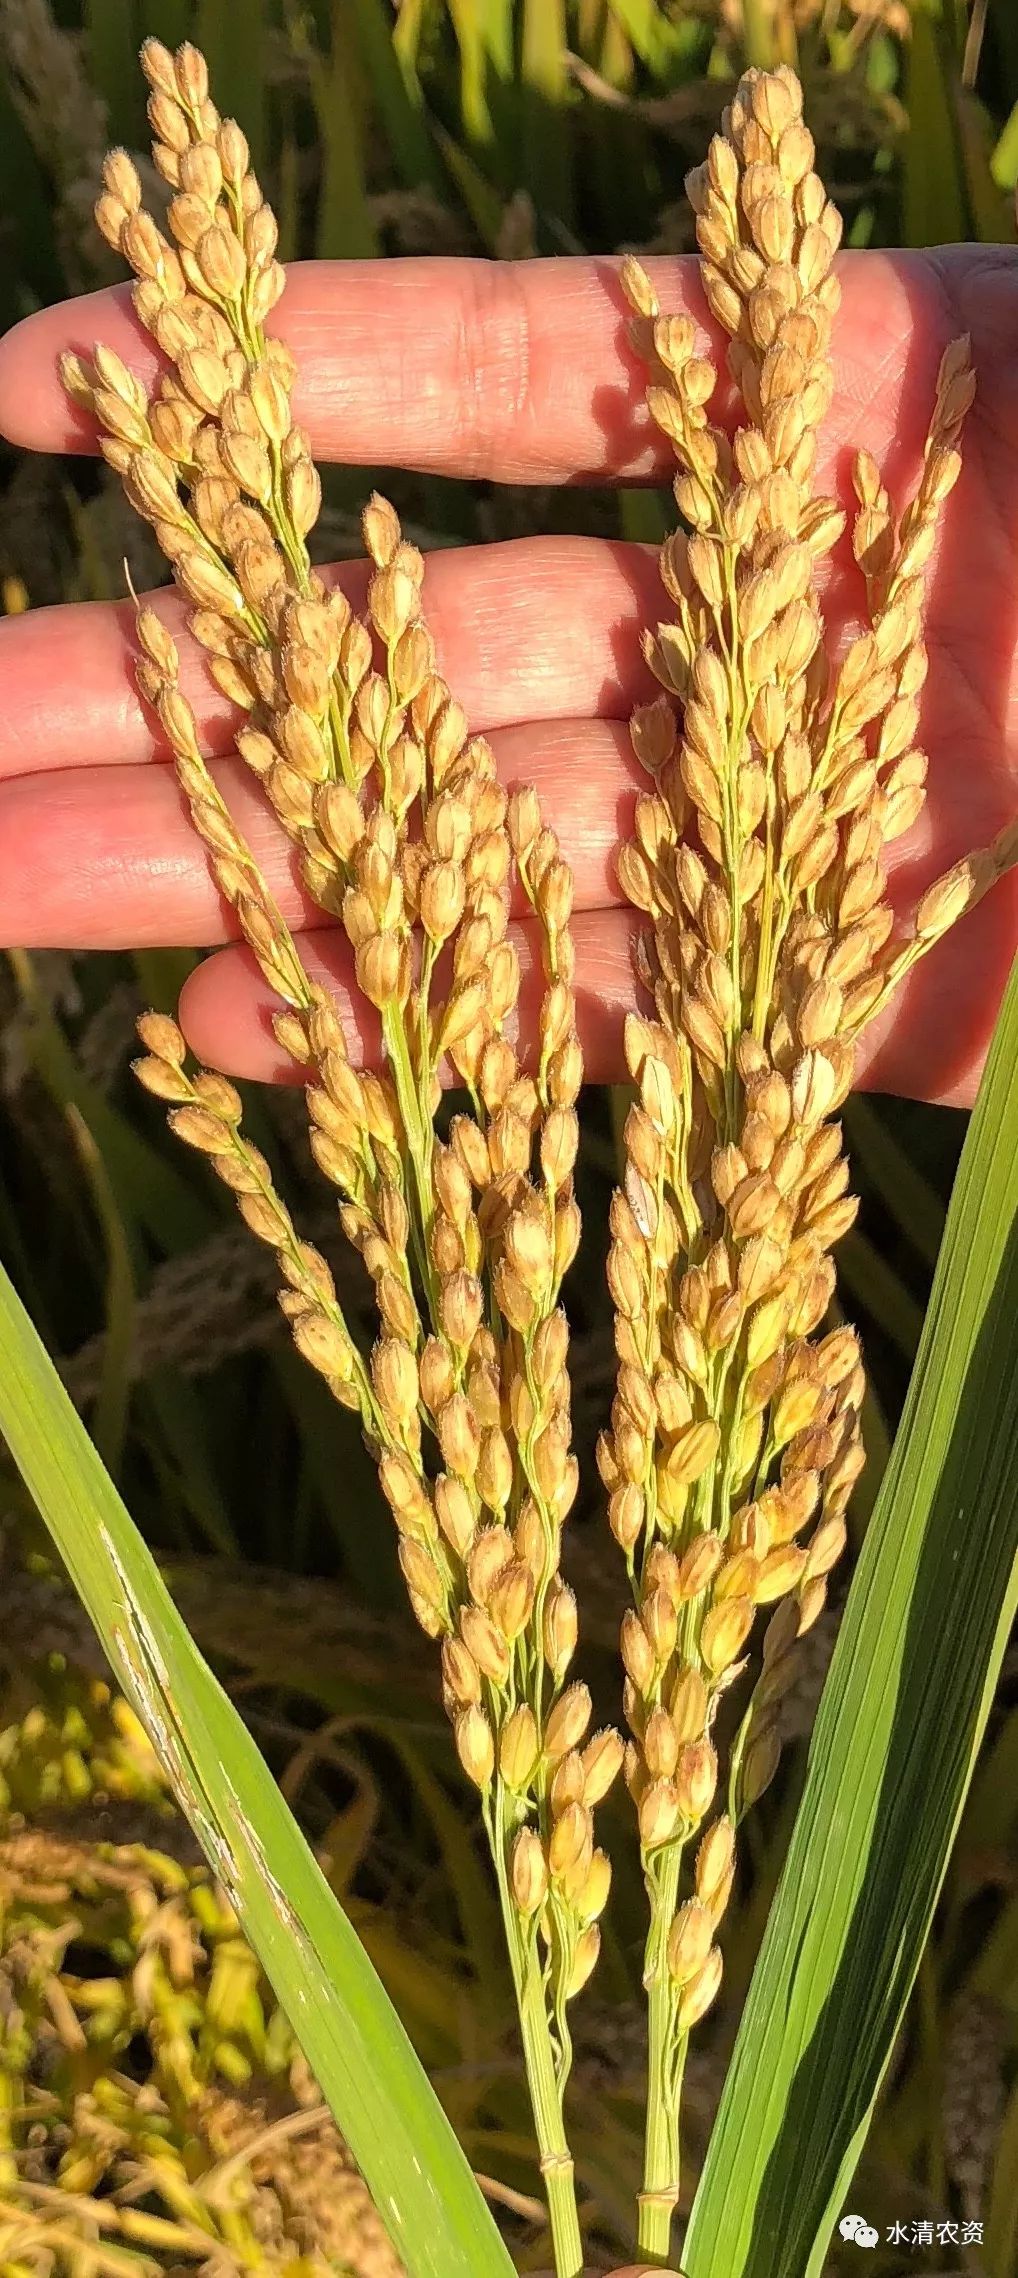 小麦越冬期如何管理软米稻价格坚挺新一轮水稻品种大更换呼之欲出